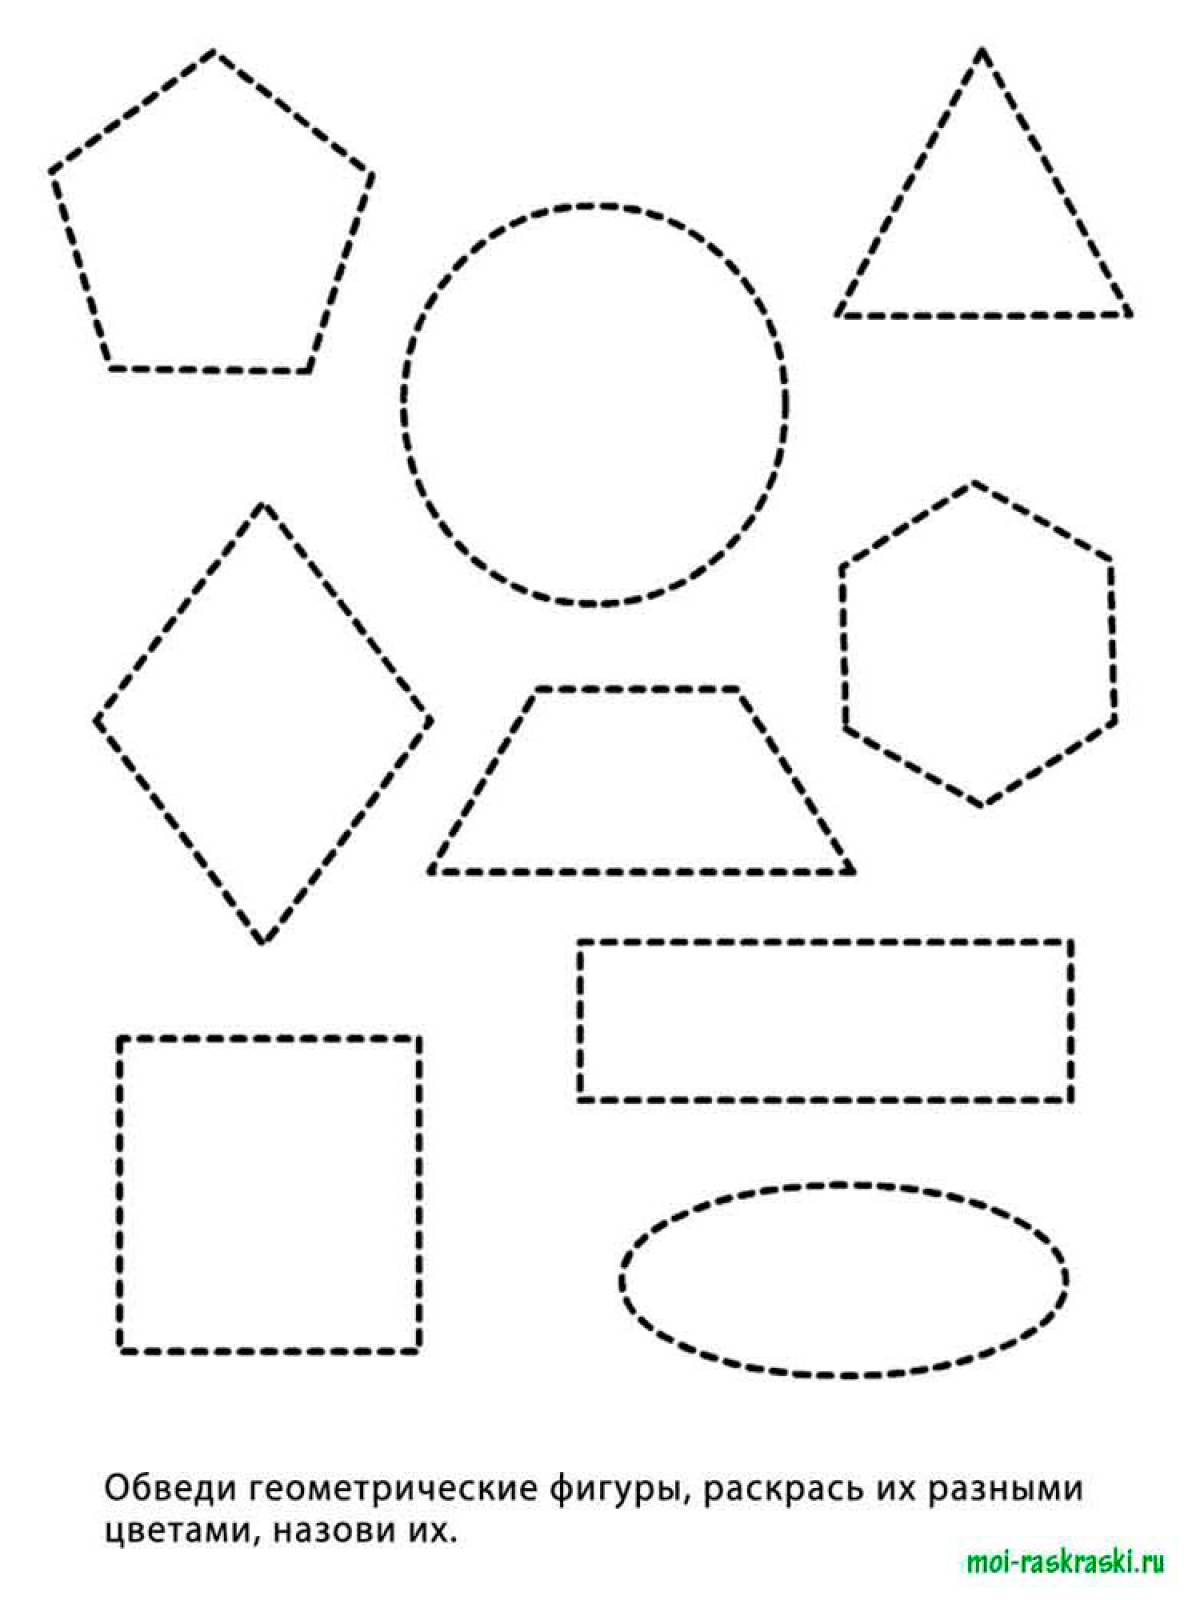 Geometric shapes 34